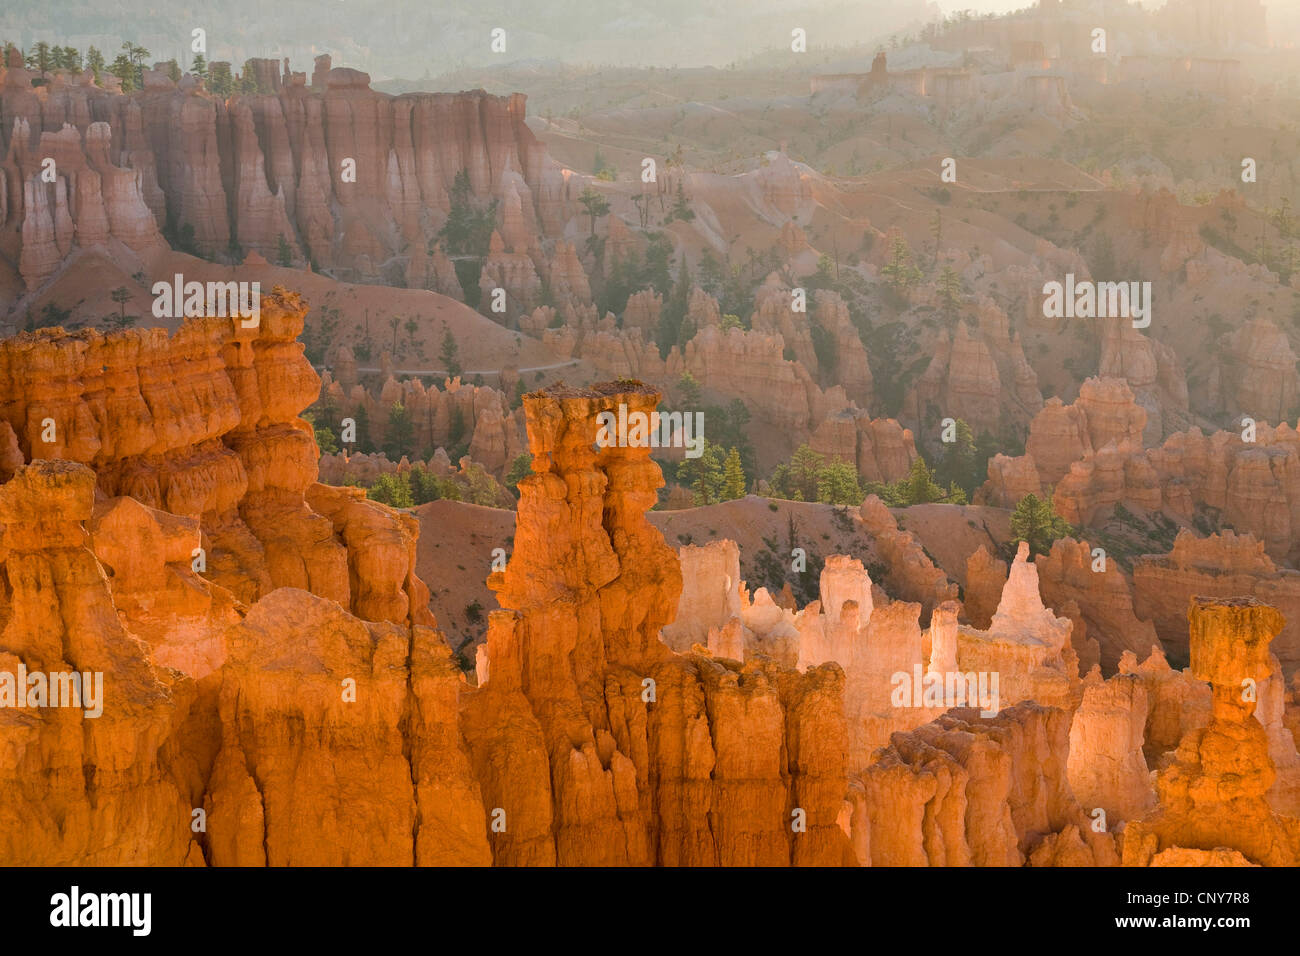 Vista dal punto di tramonto al gigante anfiteatro naturale con pilastri erosa di rocce chiamato hoodoos nella luce del mattino, USA Utah, Parco Nazionale di Bryce Canyon, Colorado Plateau Foto Stock